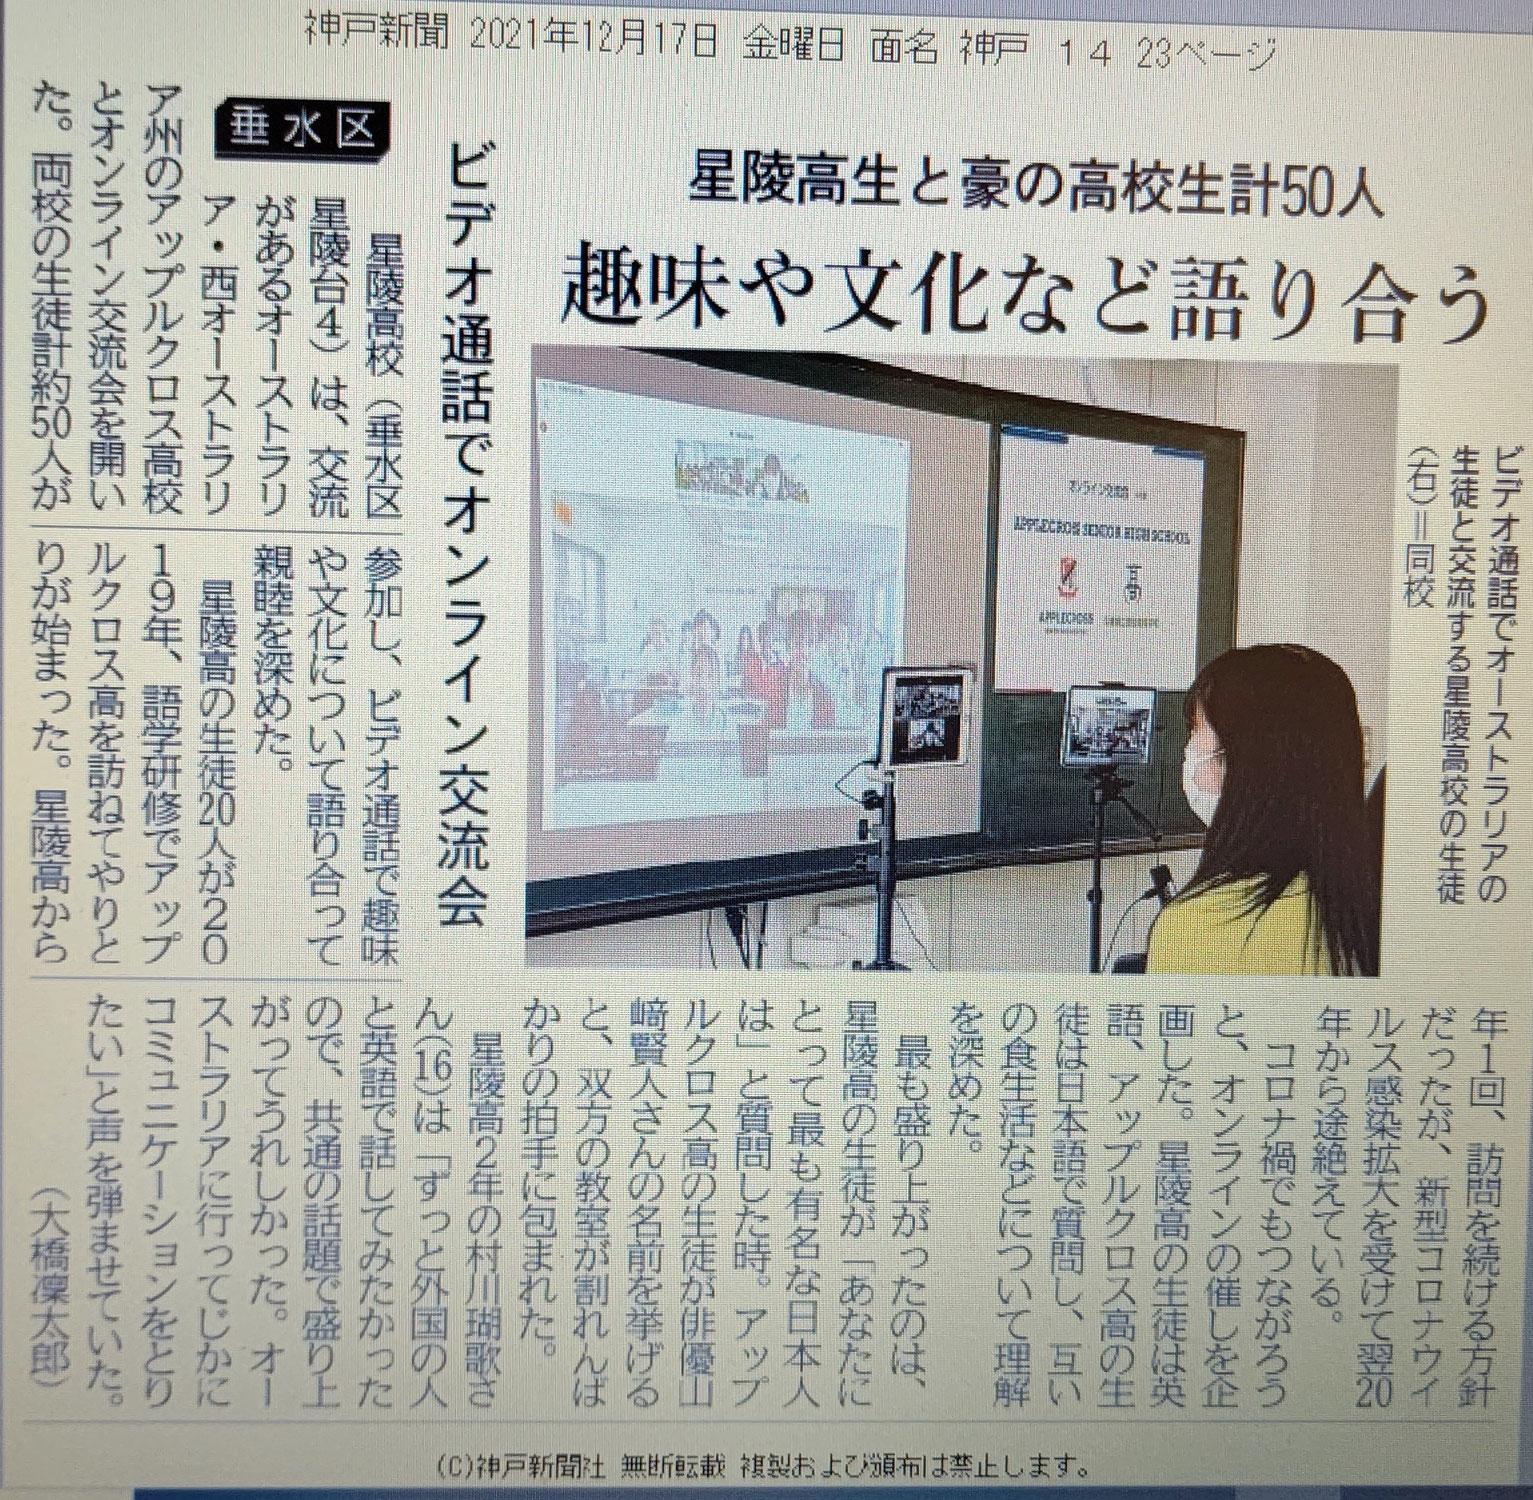 アップルクロス高校の生徒と星陵高校の生徒とのオンライン交流会の様子が神戸新聞に掲載されました。